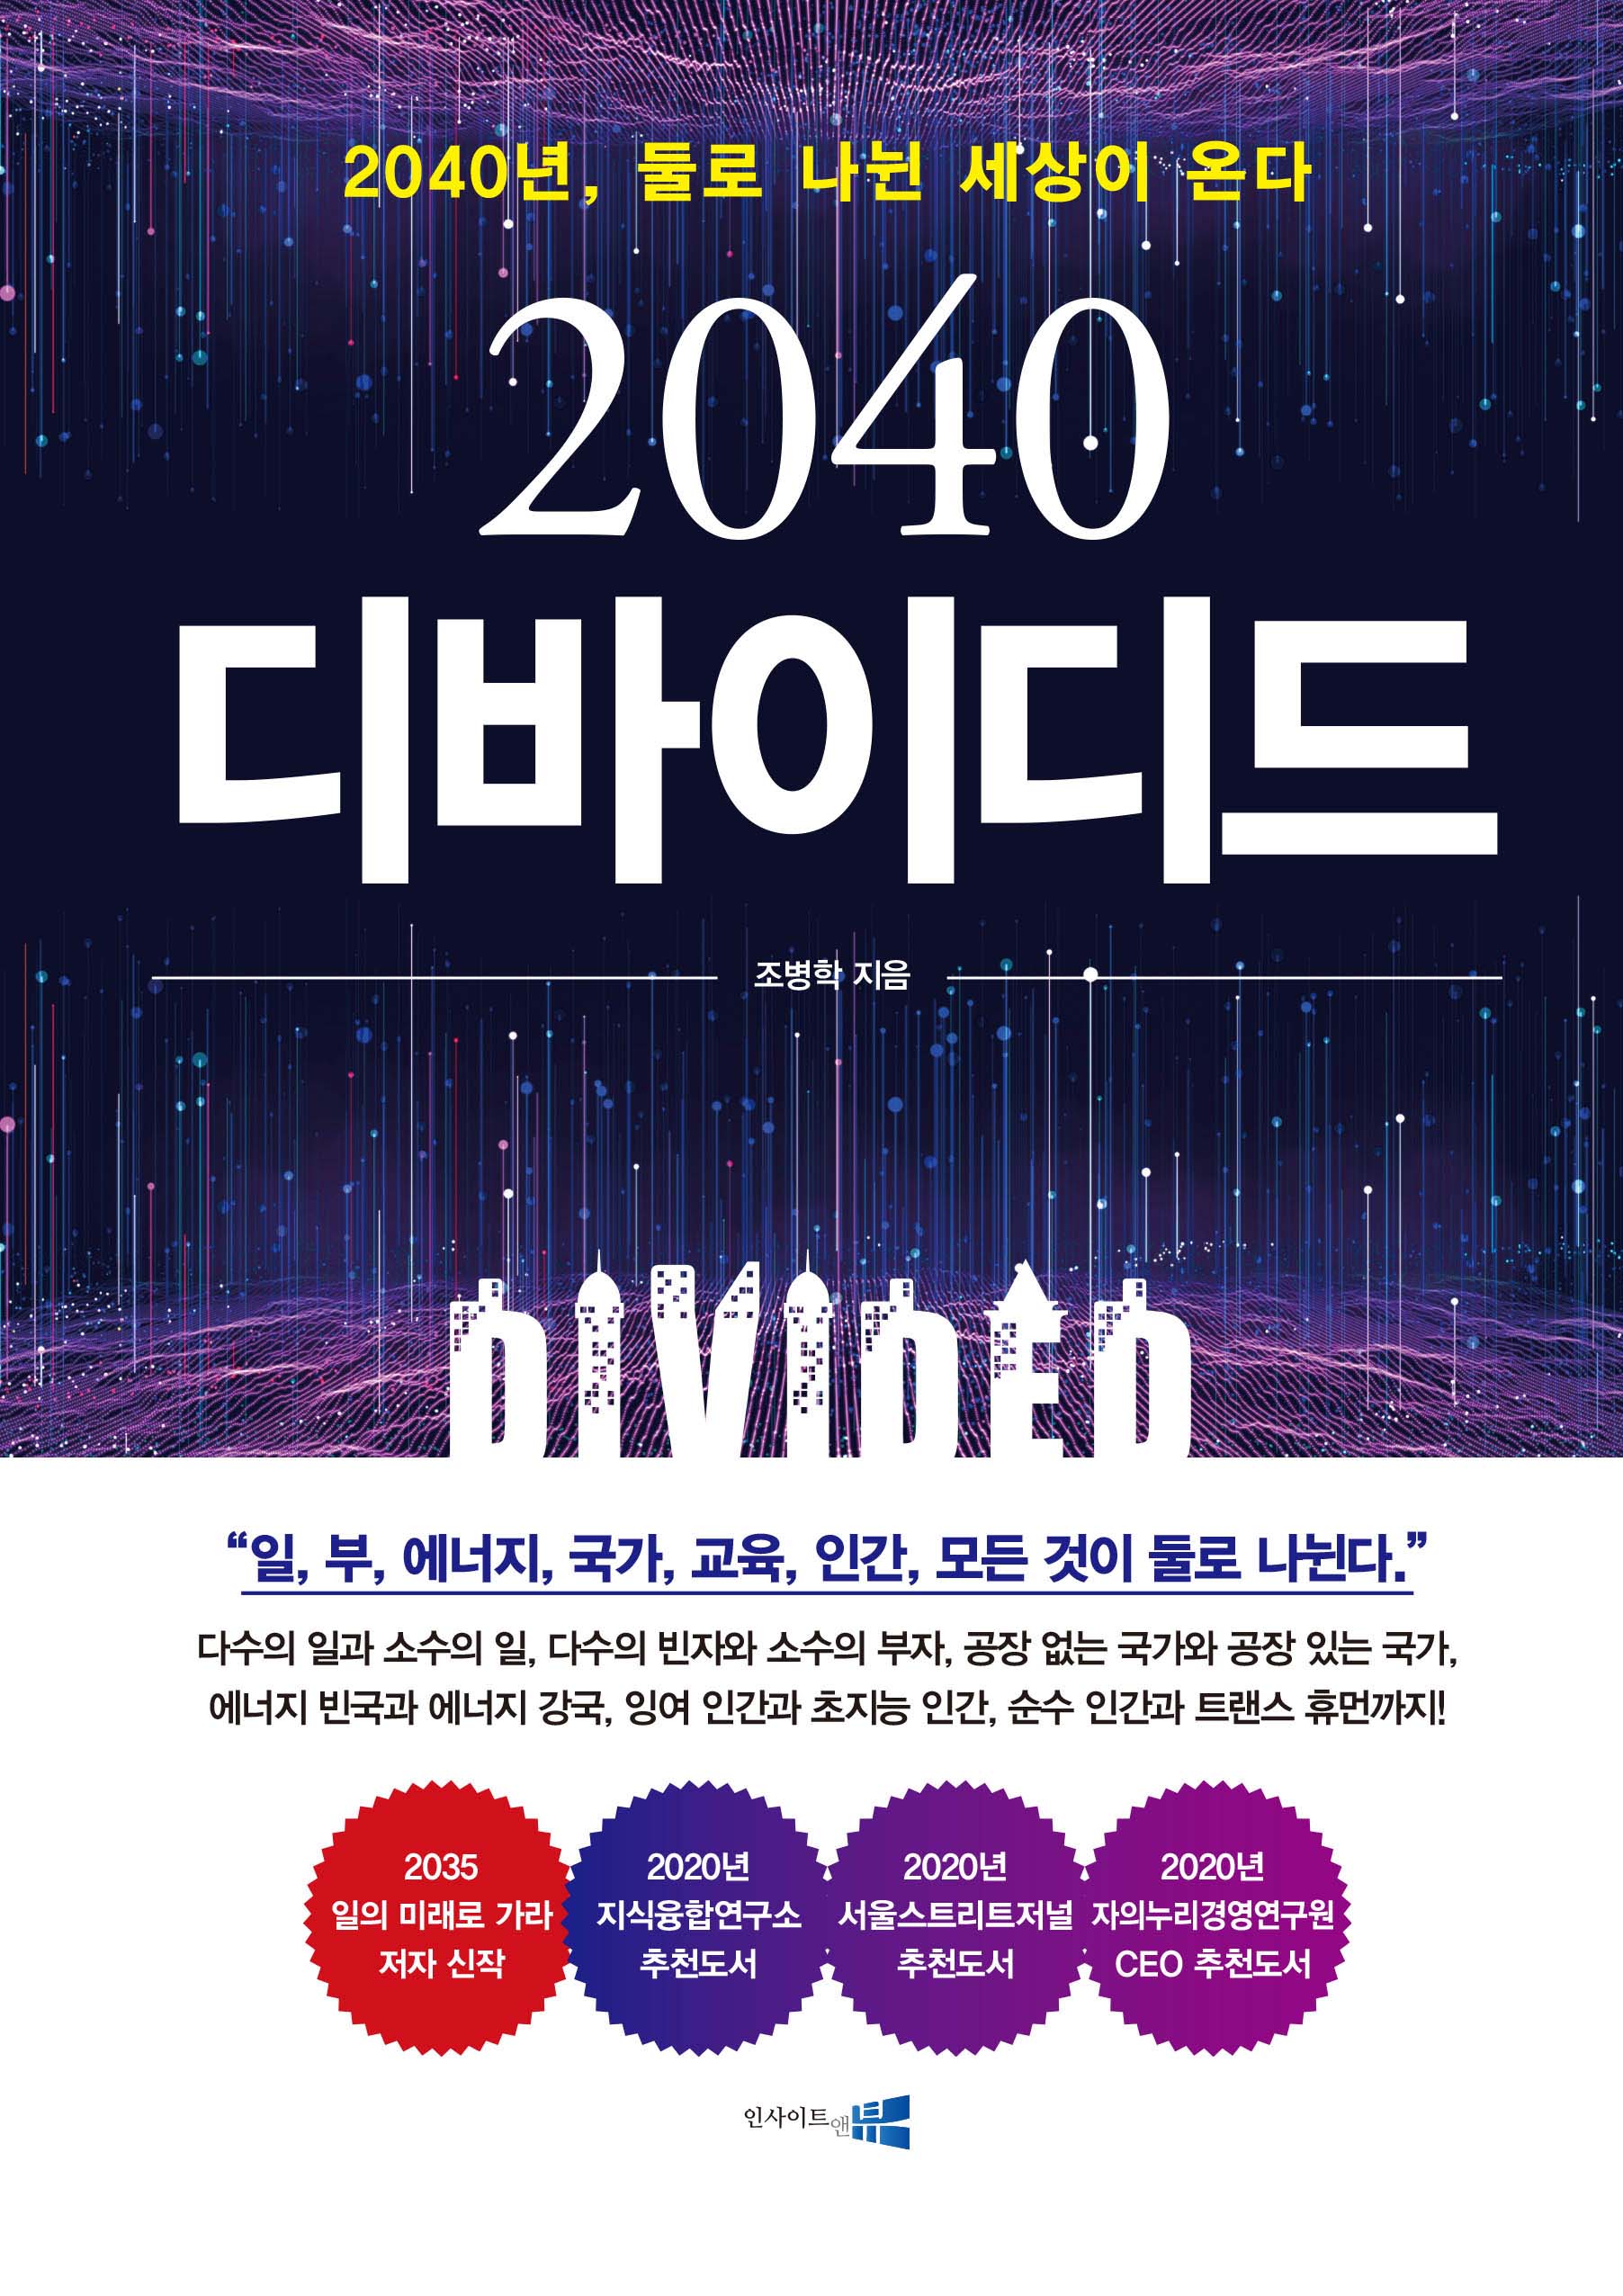 (2040)디바이디드: 2040년, 둘로 나뉜 세상이 온다